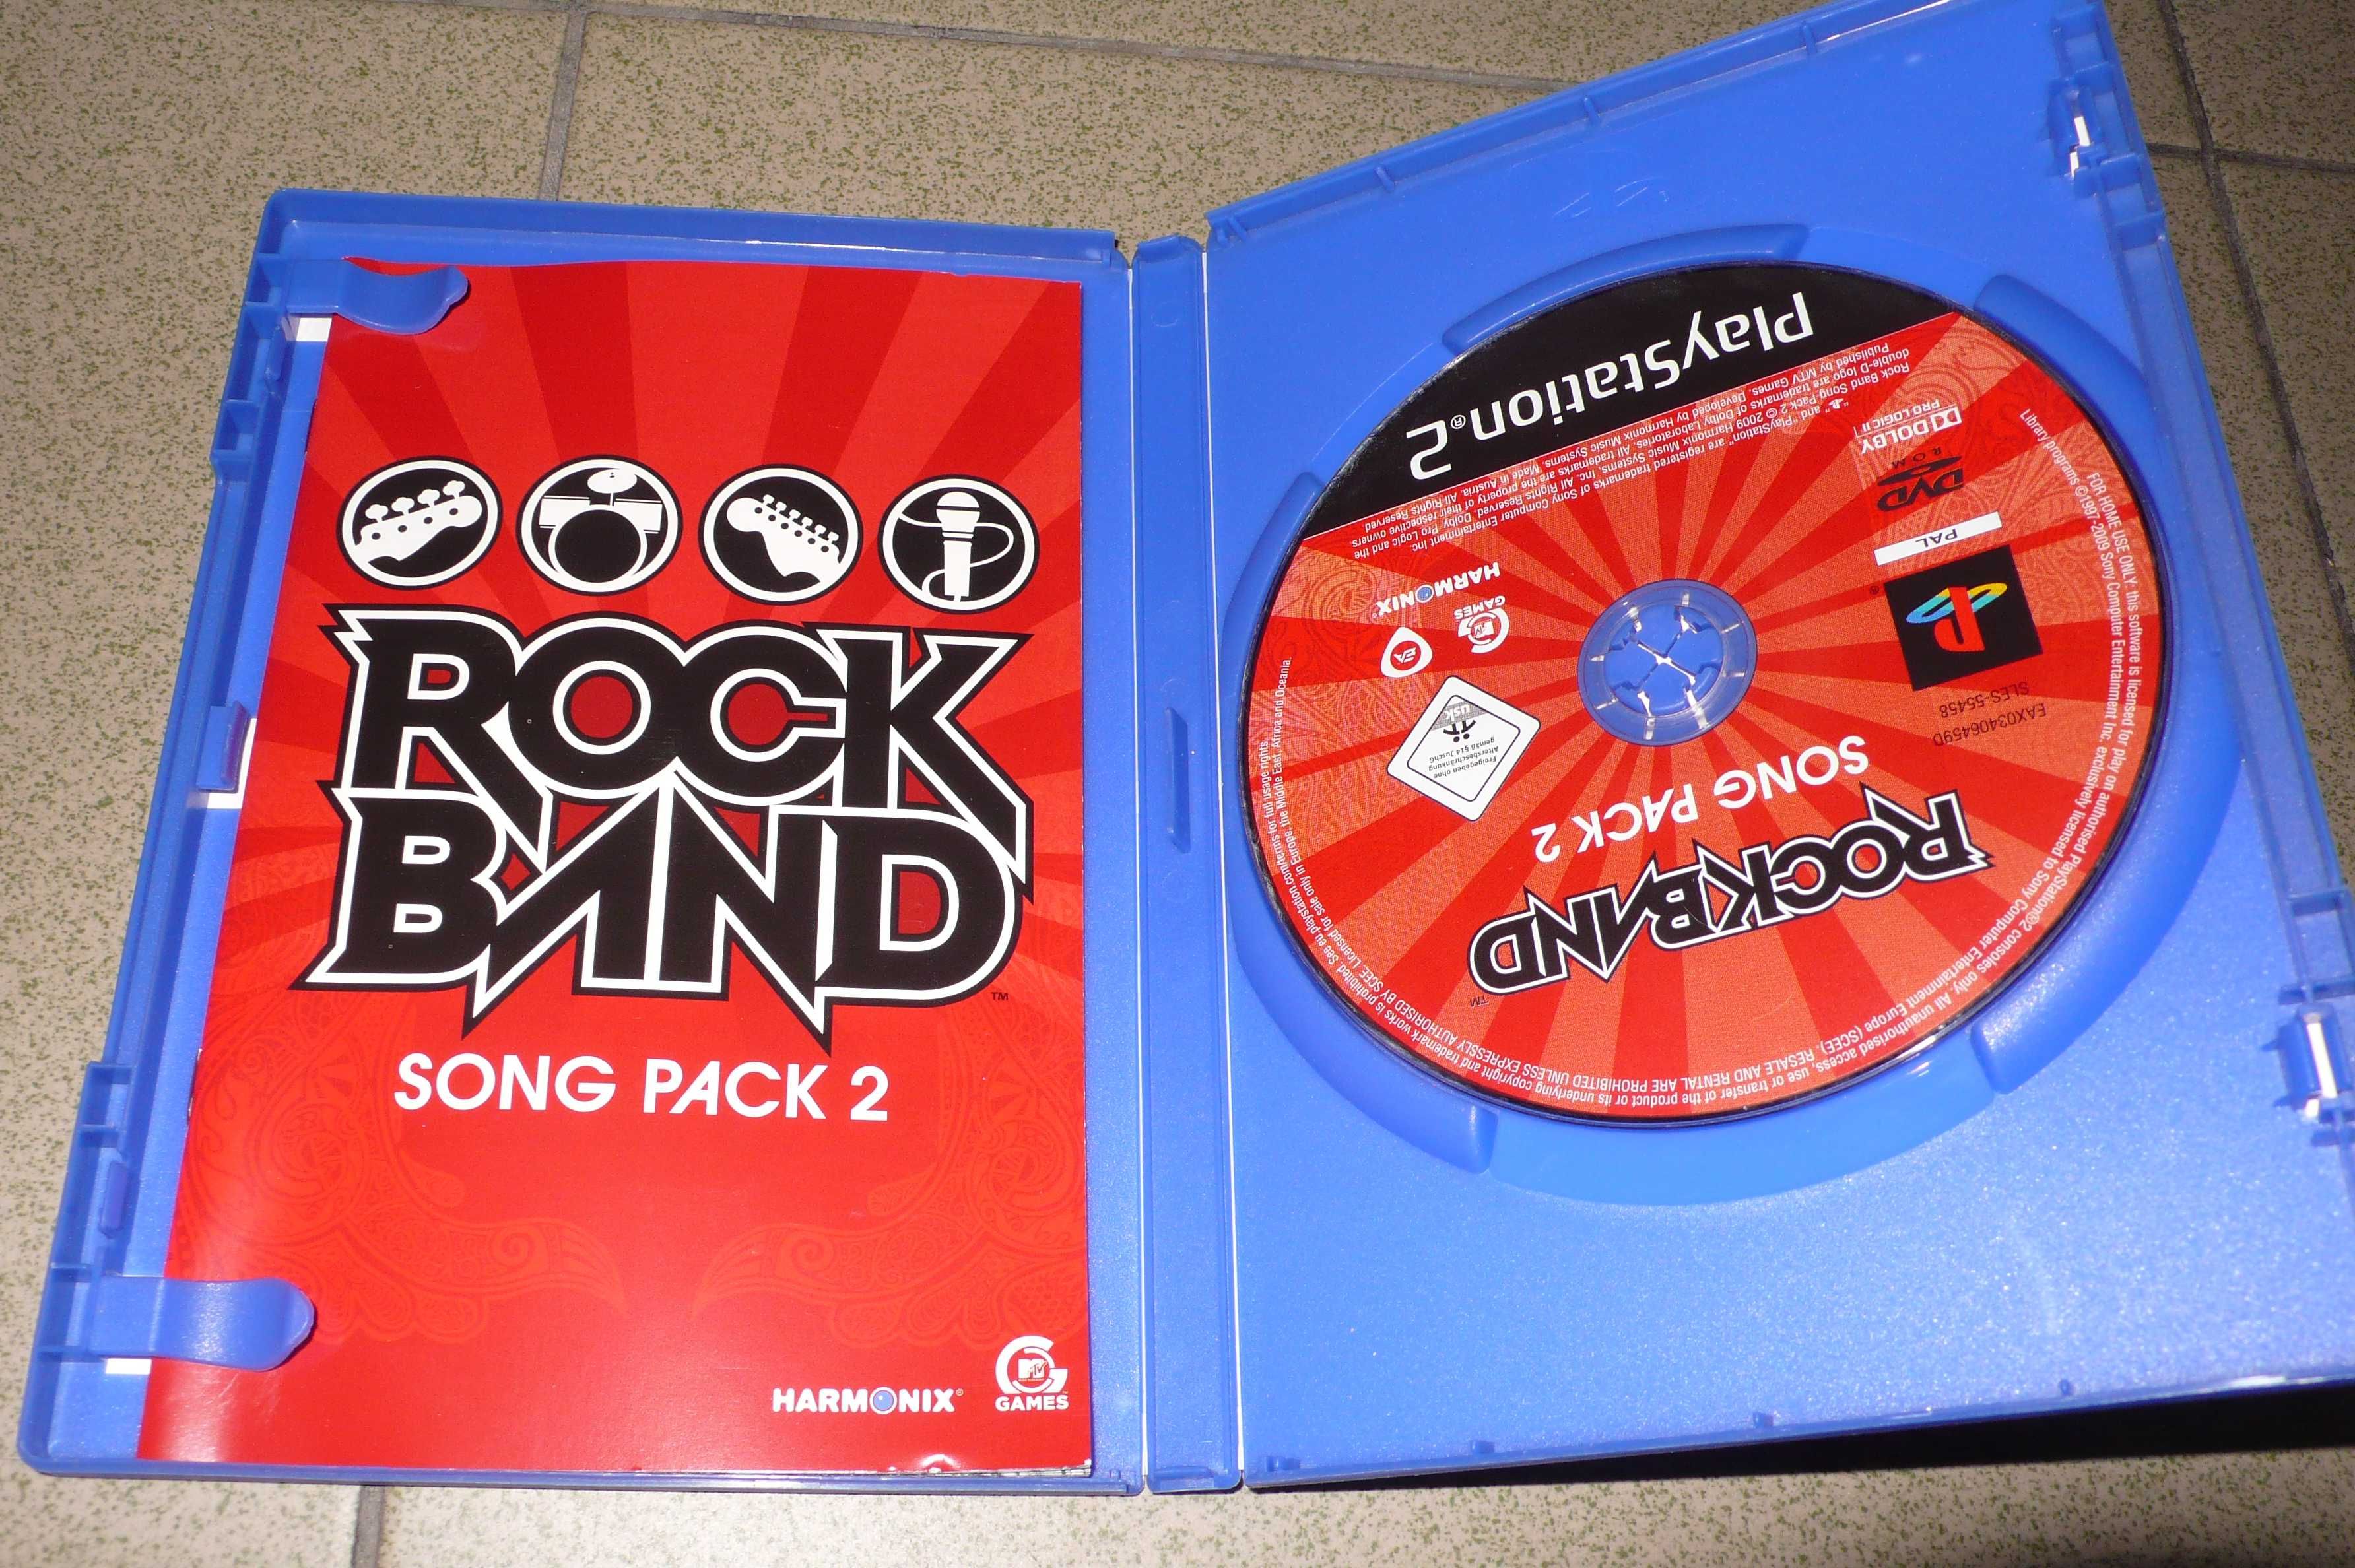 Rock Band : Song Pack 2 na PS2 Playstation 2